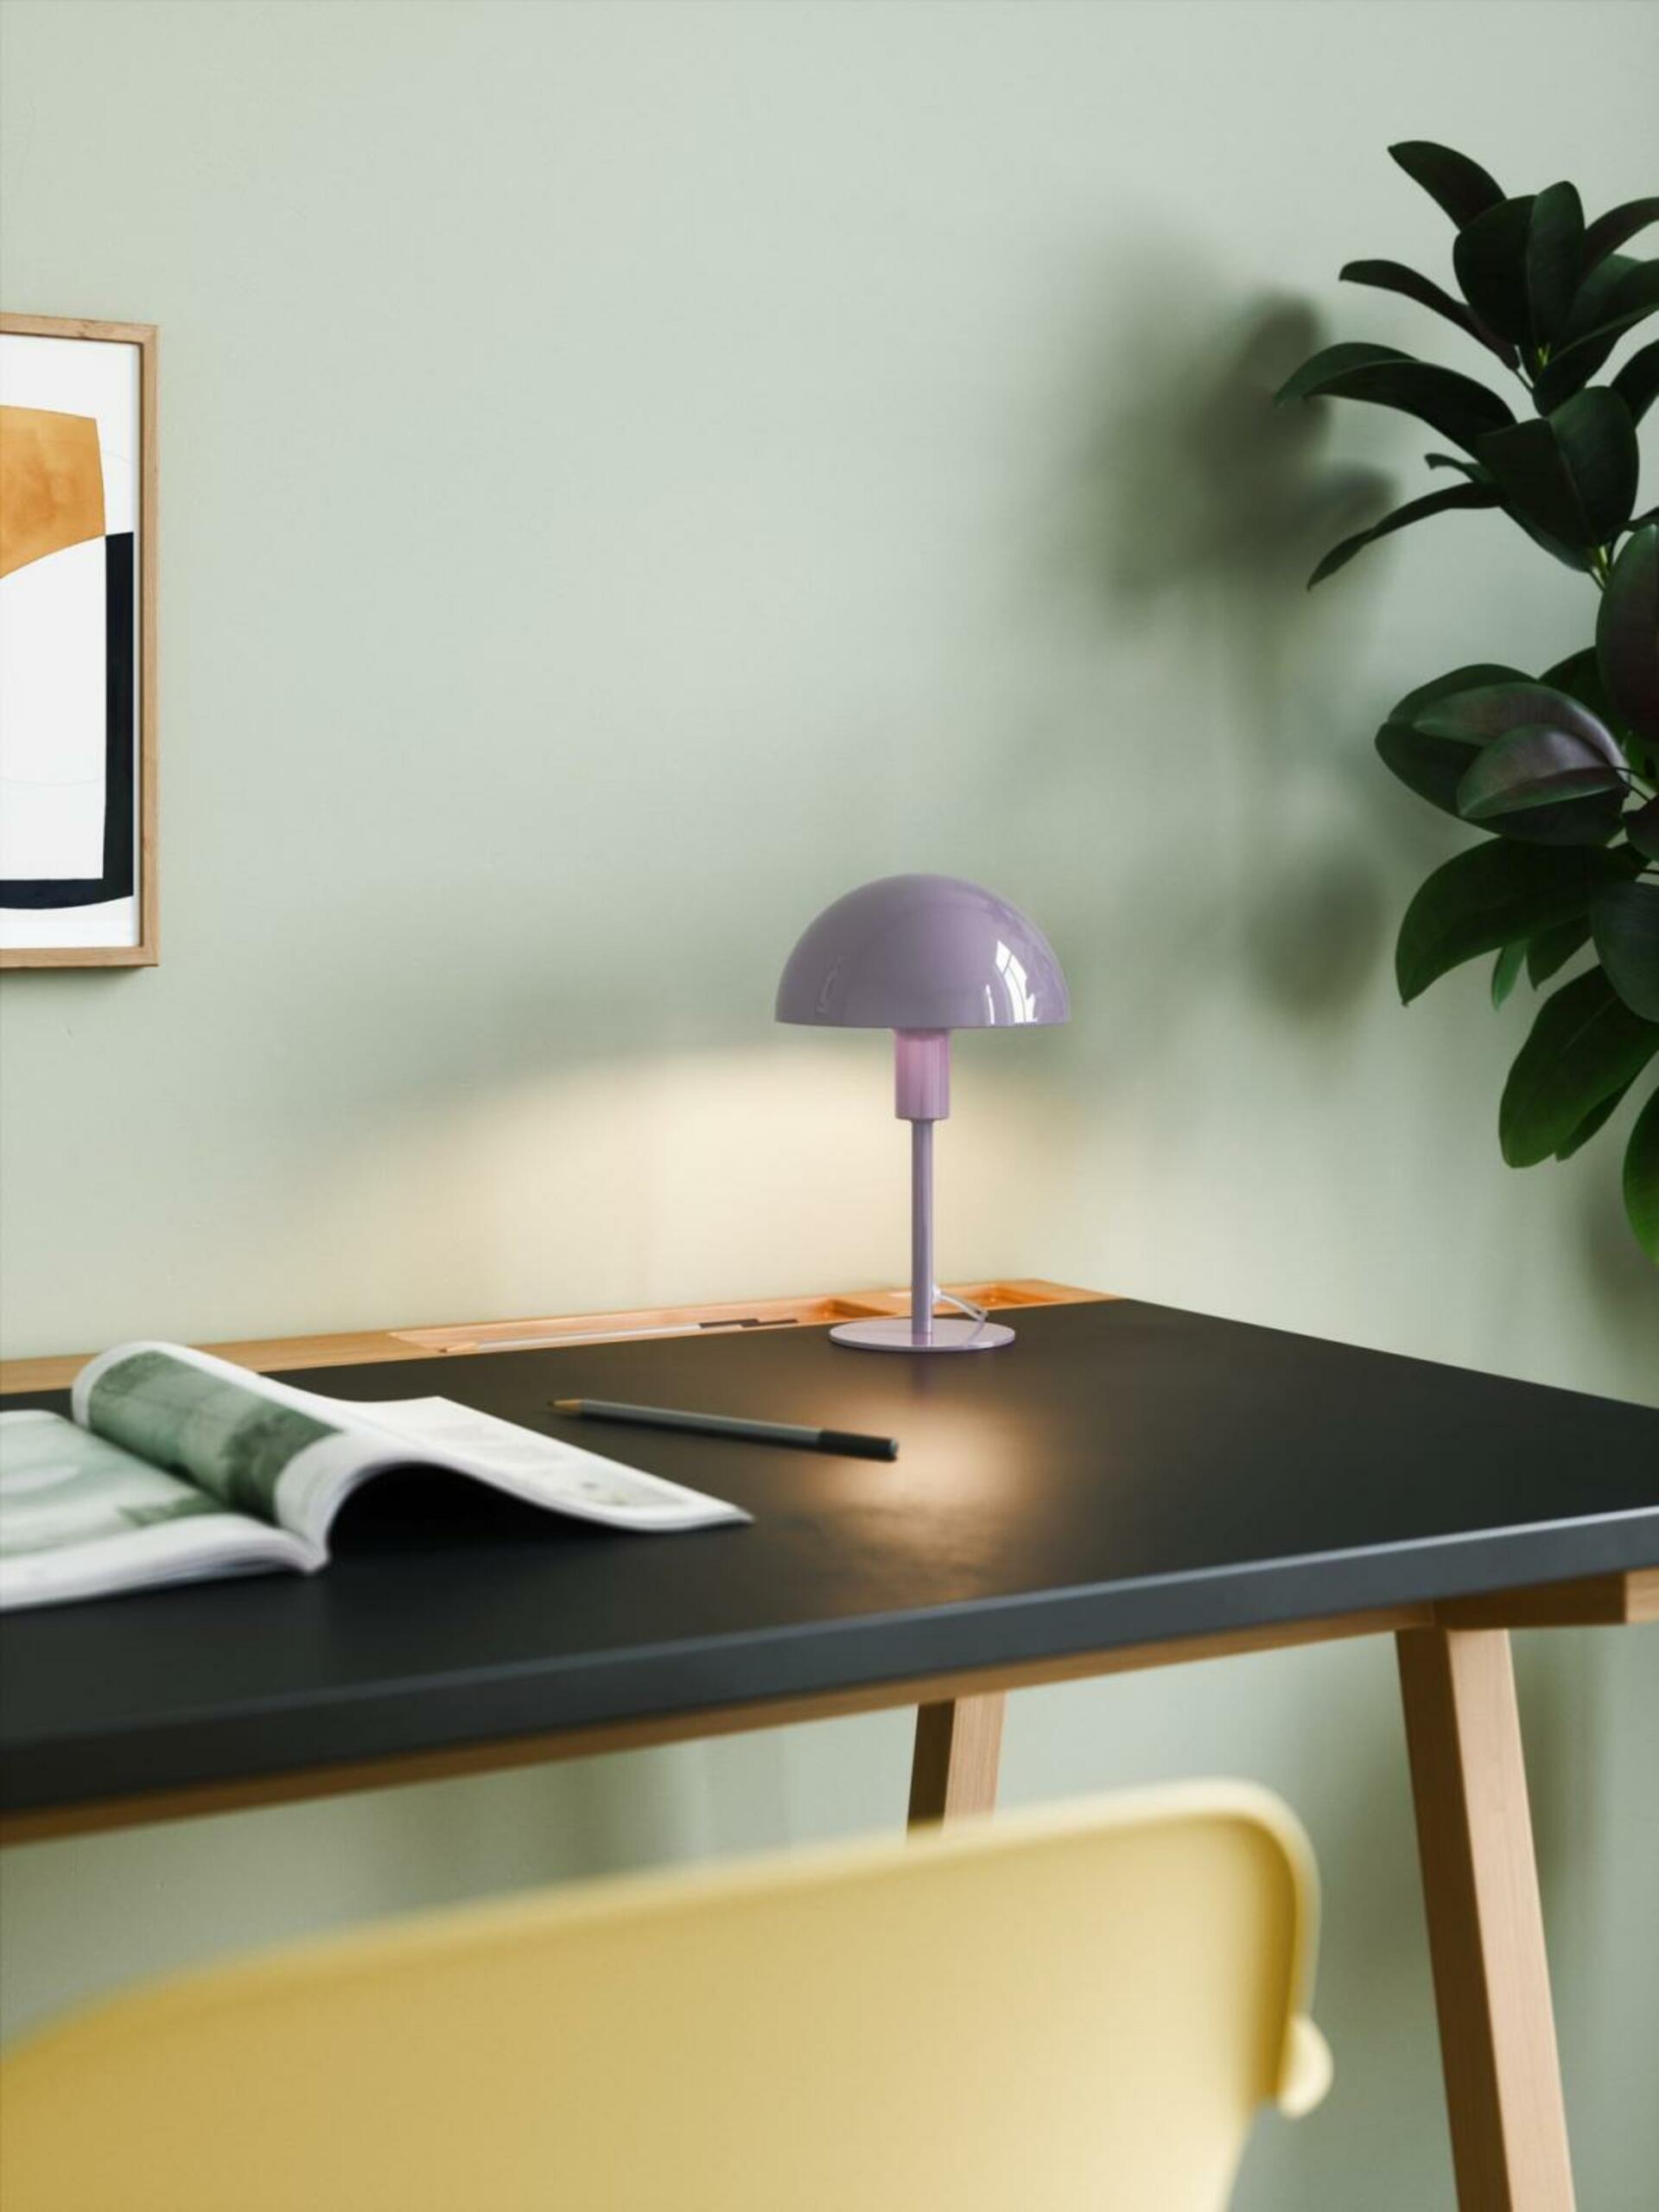 NORDLUX Ellen Mini stolní lampa fialová 2213745007